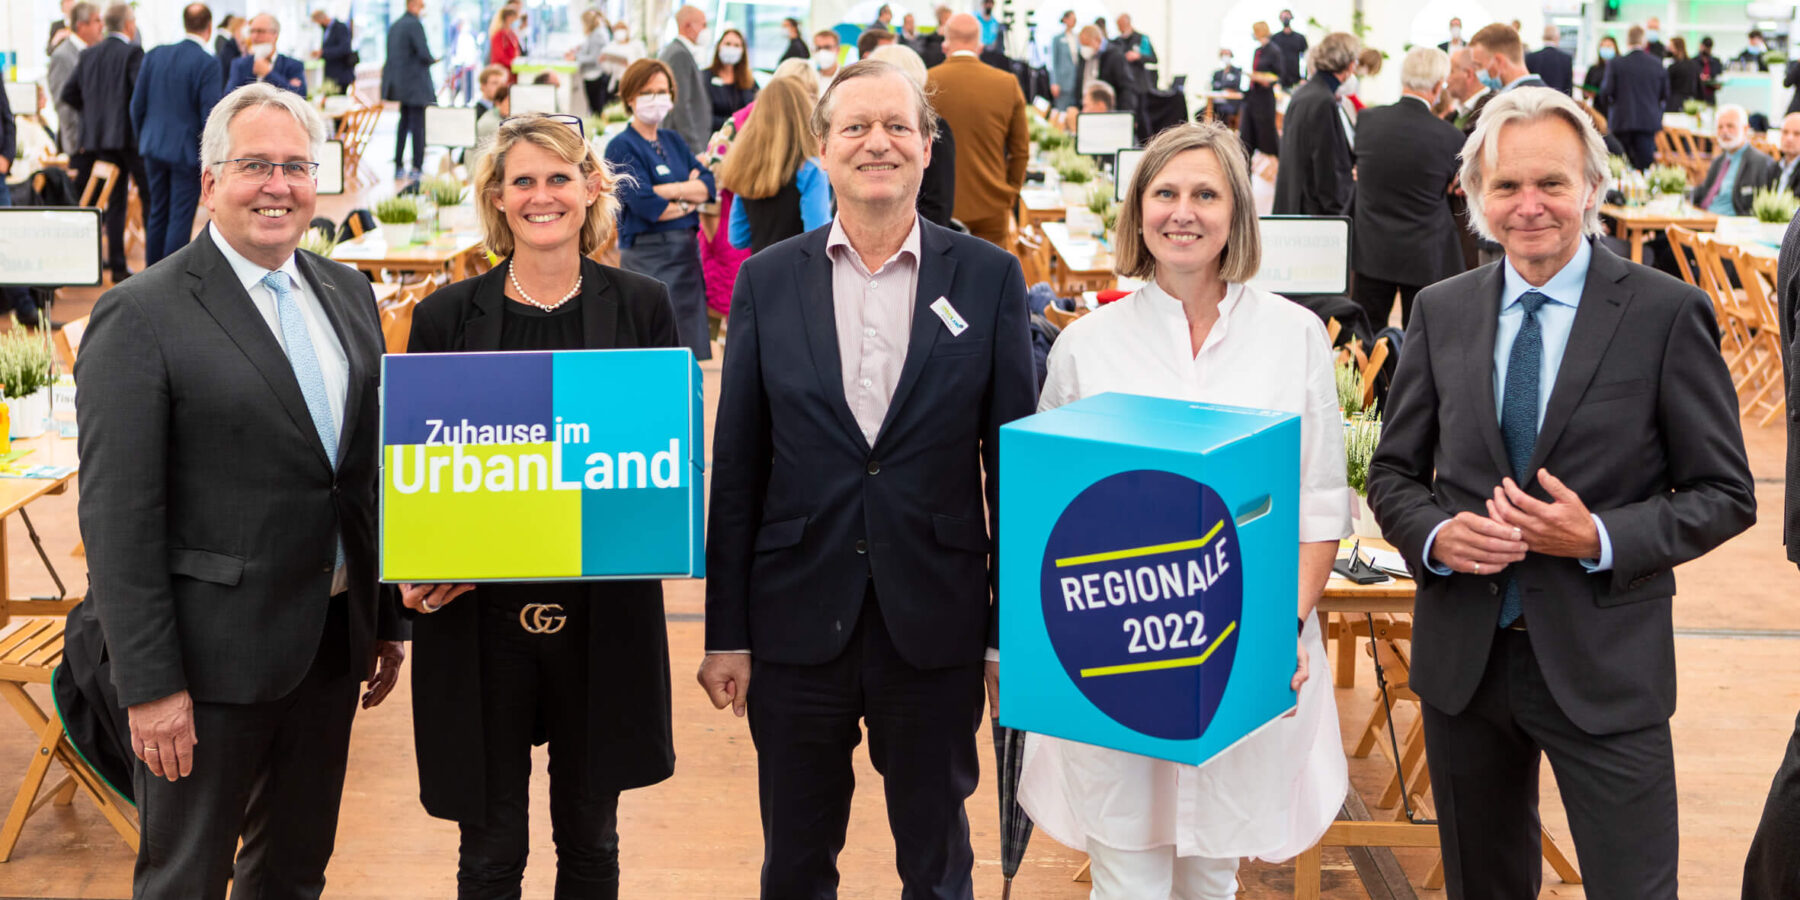 UrbanLand Partie 2021 feiert Projekte und bilanziert Ergebnisse der REGIONALE 2022